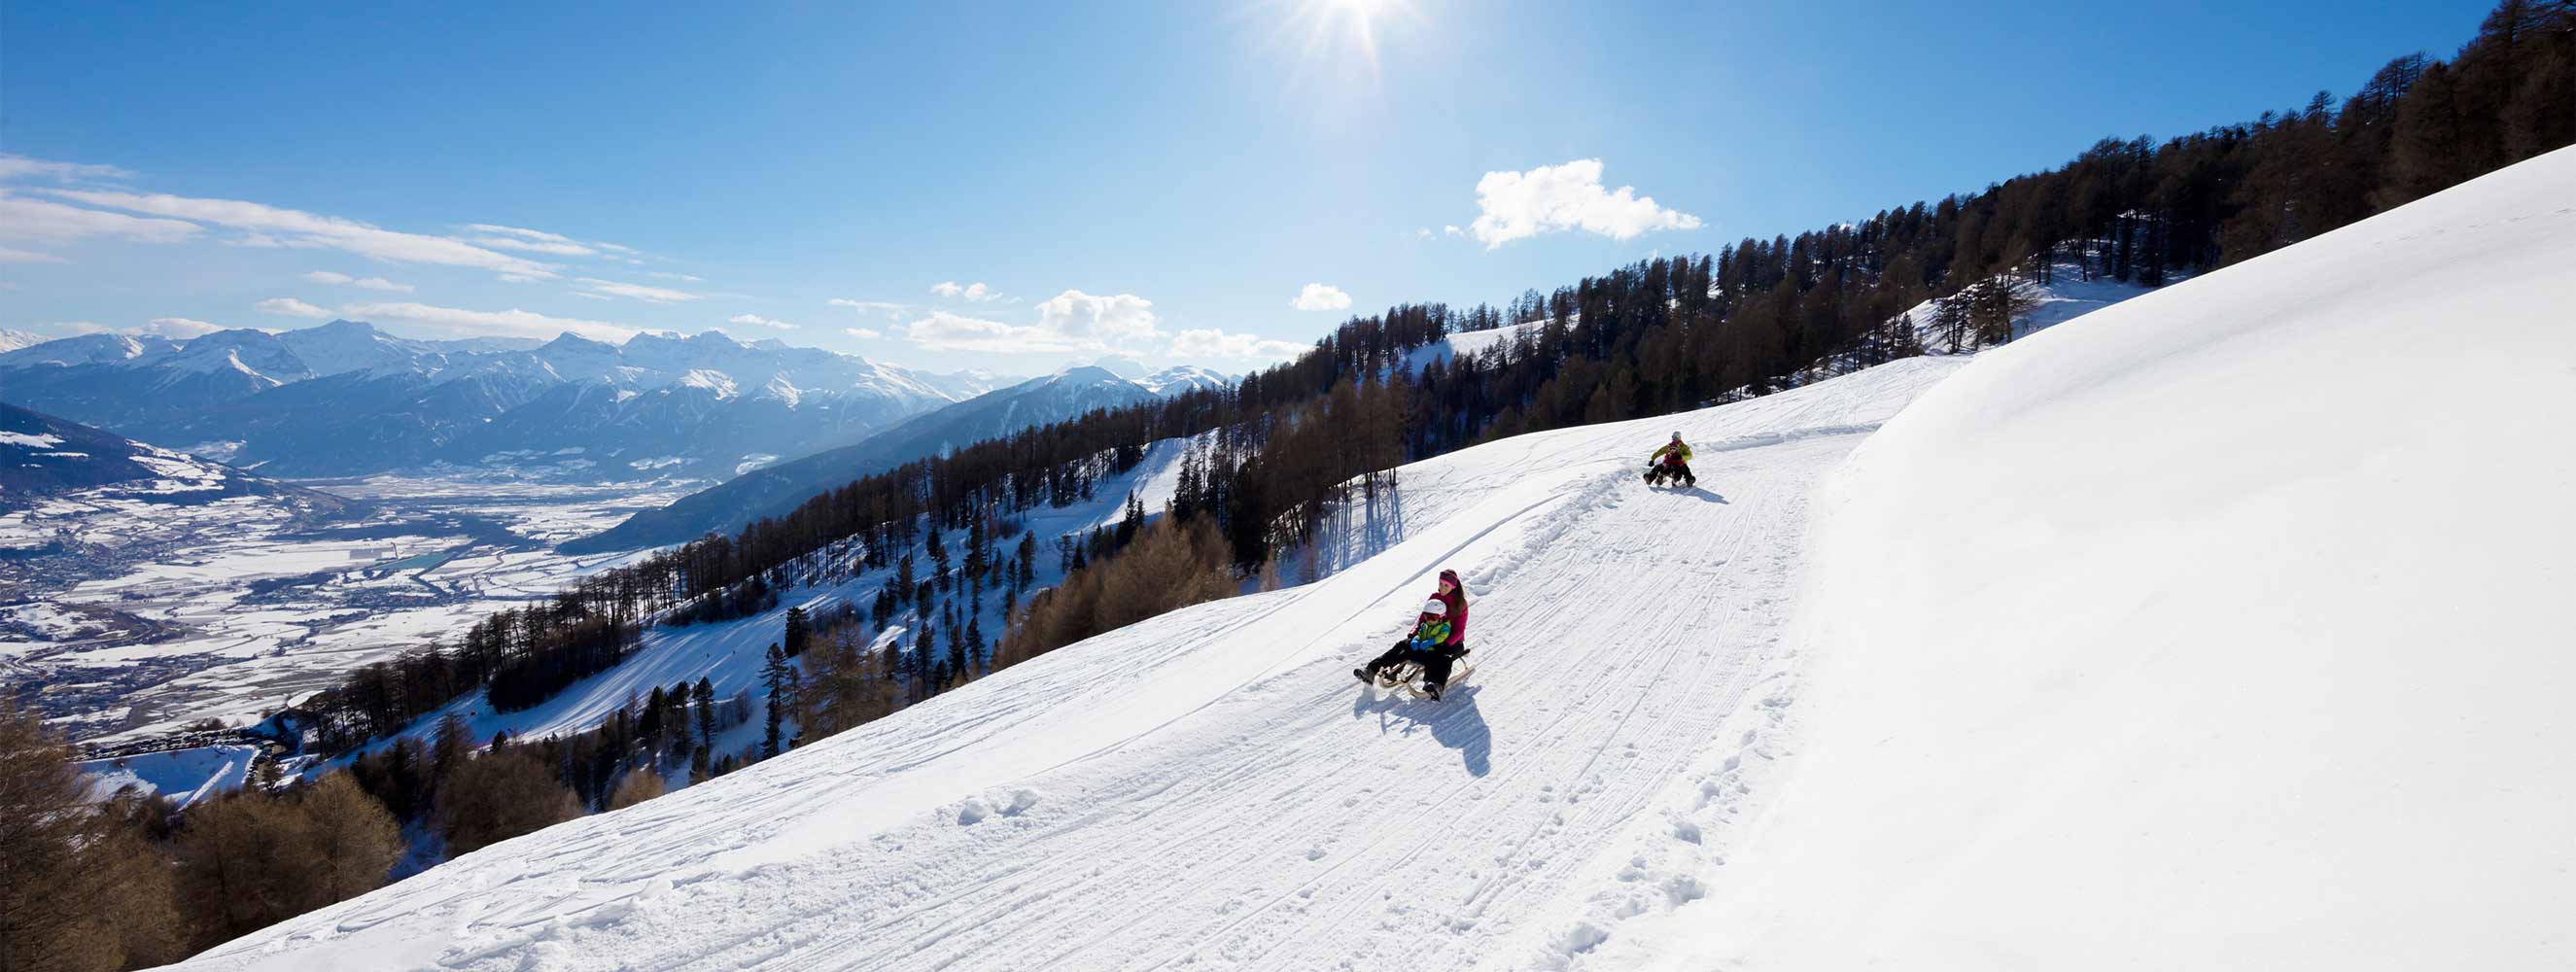 Wintersport in traumhafter Schneelandschaft